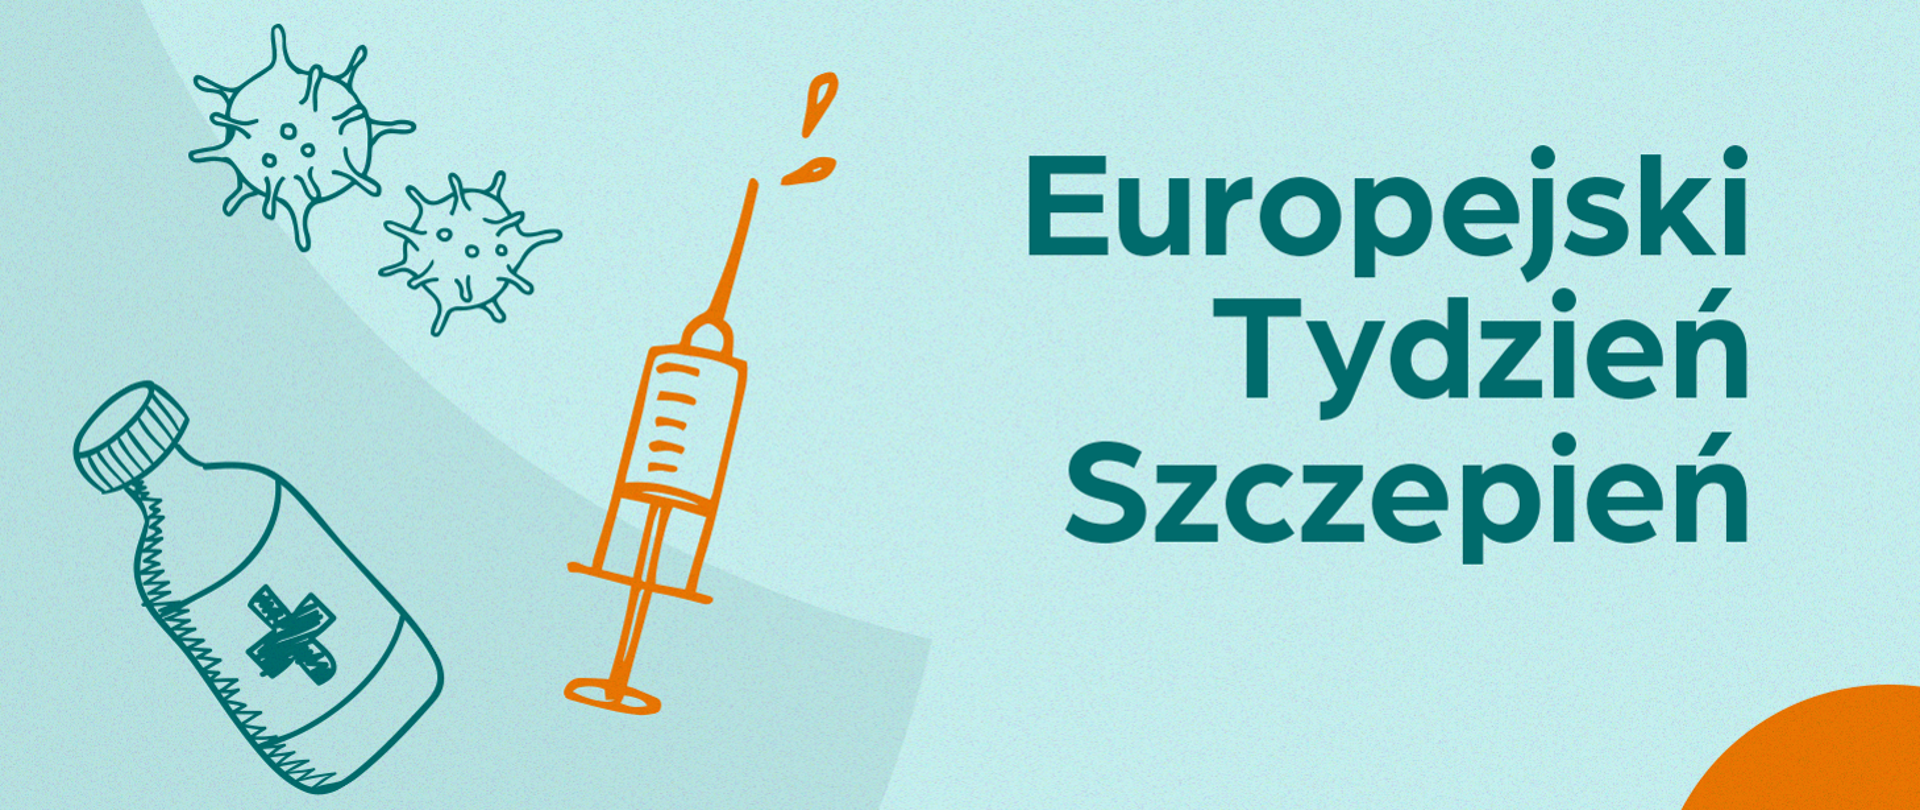 zielony baner z napisem Europejski Tydzień Szczepień, z lewej strony ikona strzykawki, wirusa i preparatu do szczepień